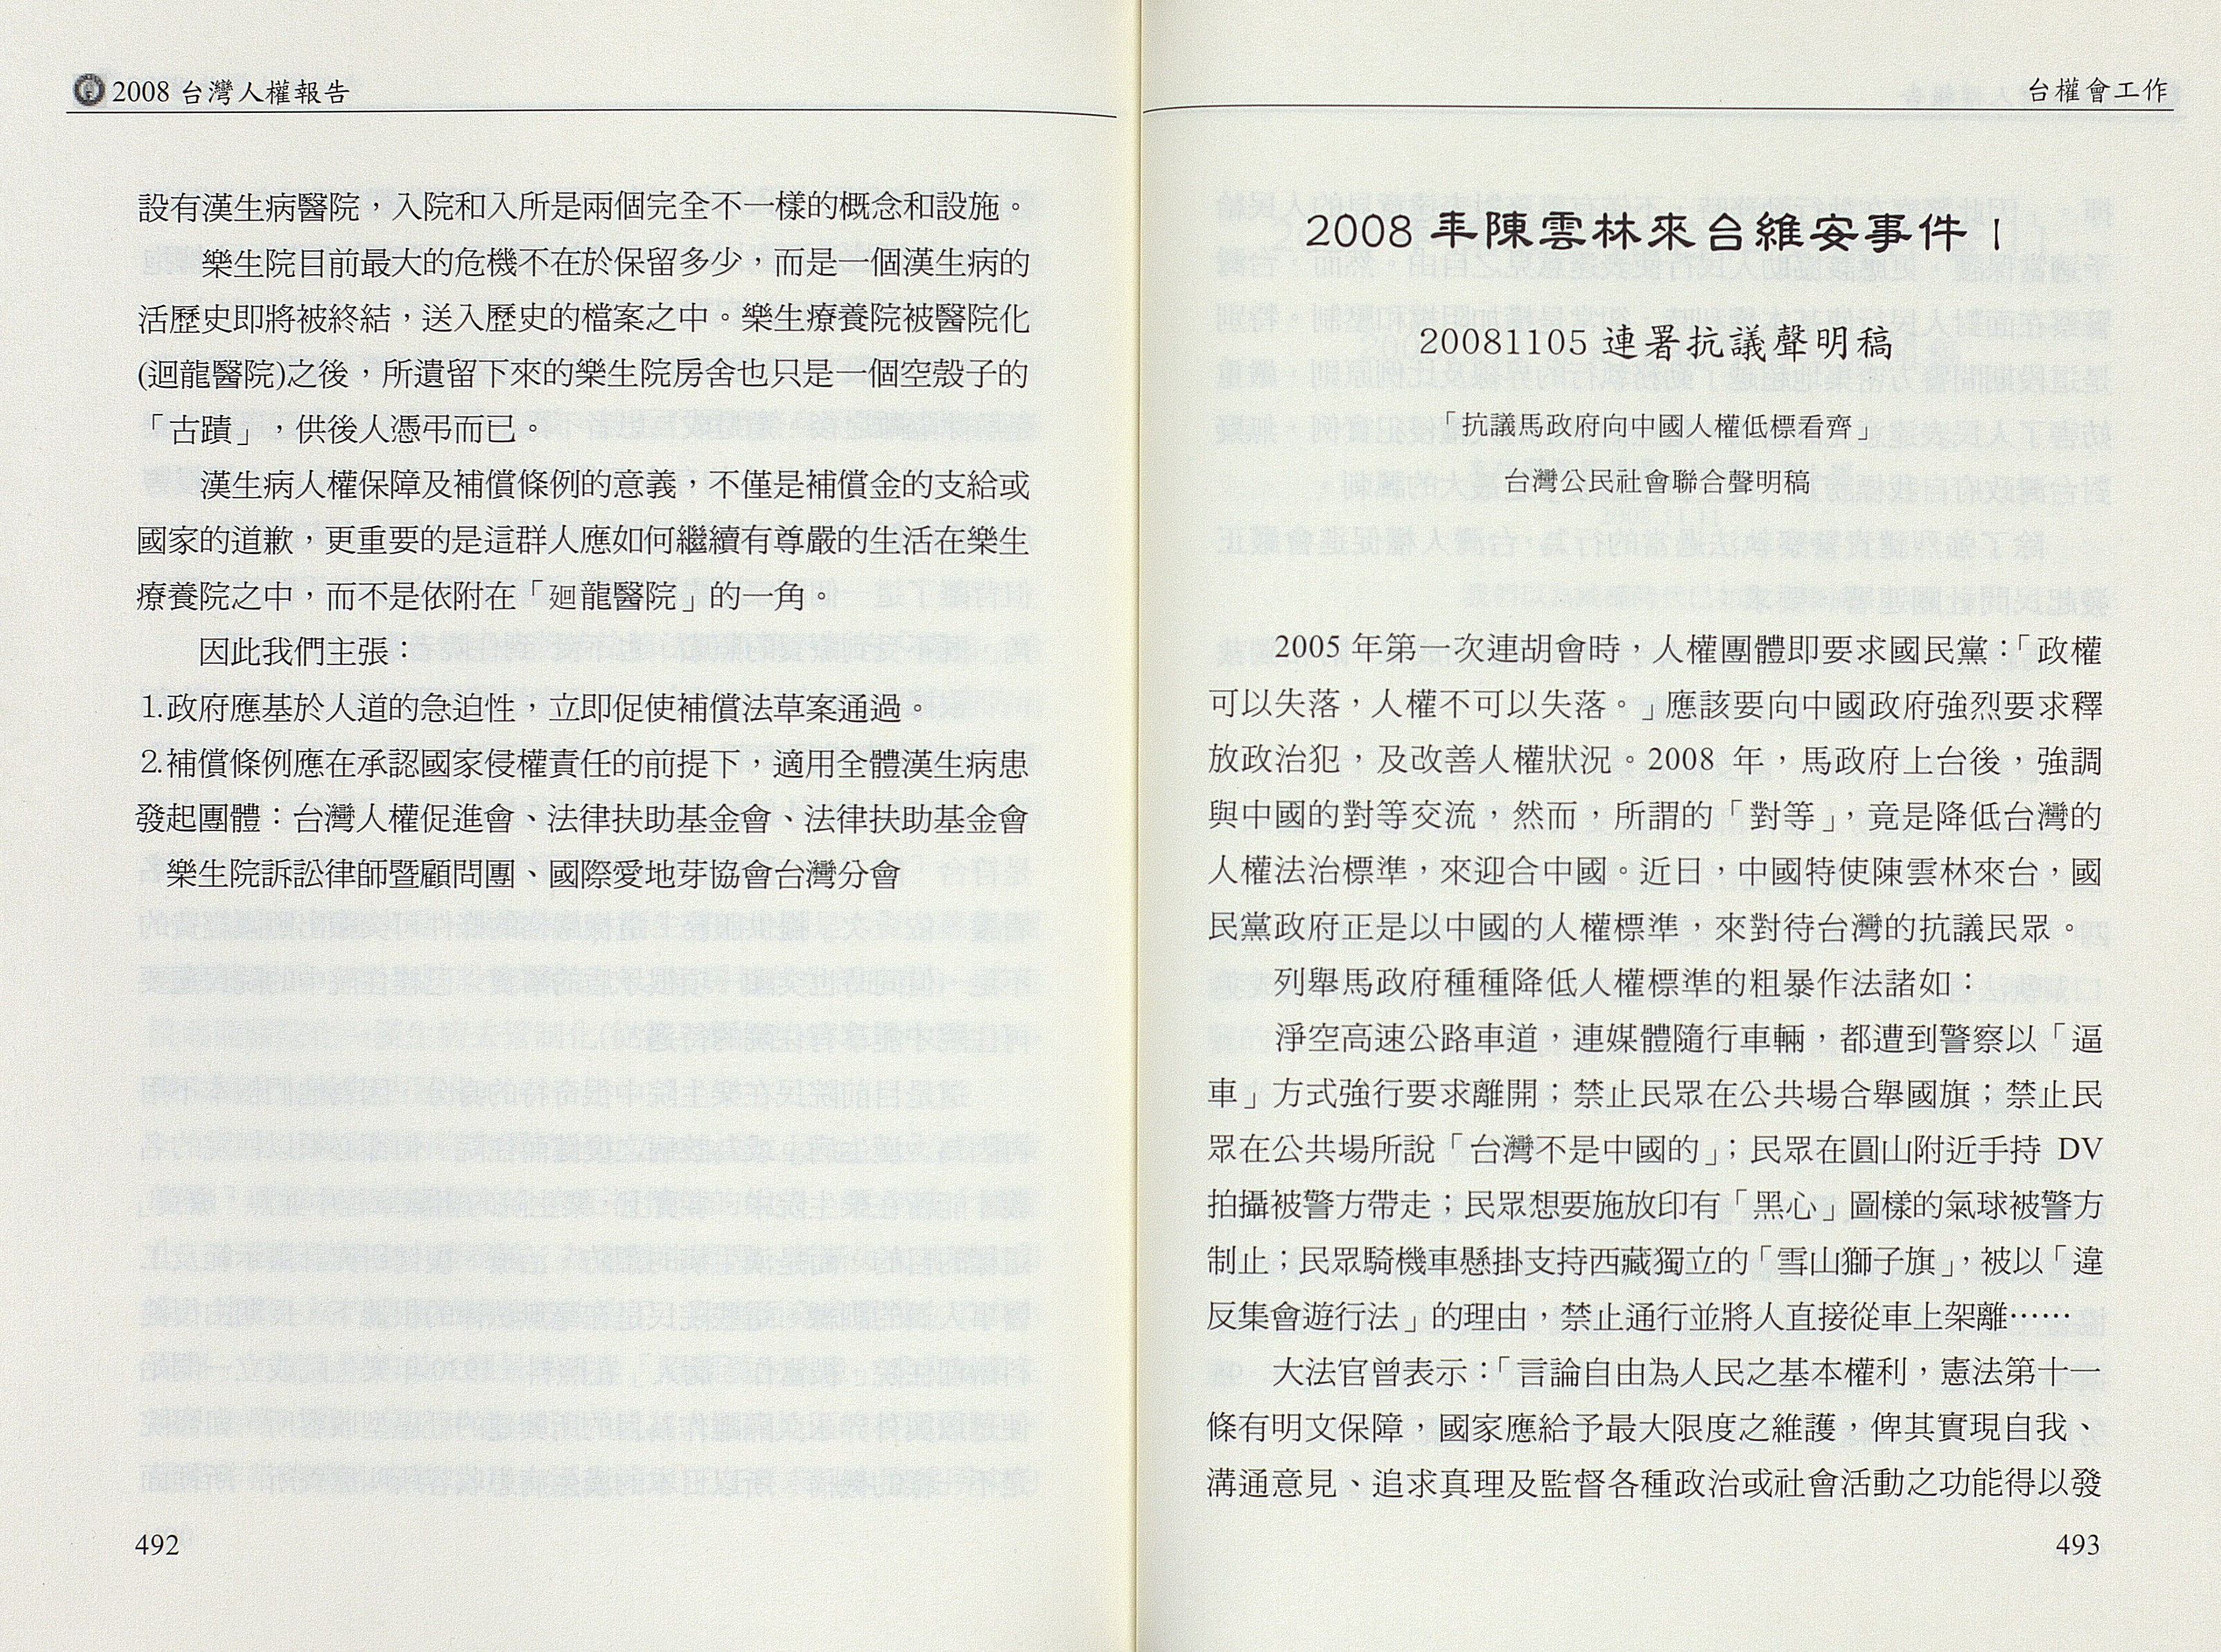 2008年陳雲林來台維安事件案I20081105連署抗議聲明稿：「抗議馬政府向中國人權低標看齊」台灣公民社會聯合聲明稿